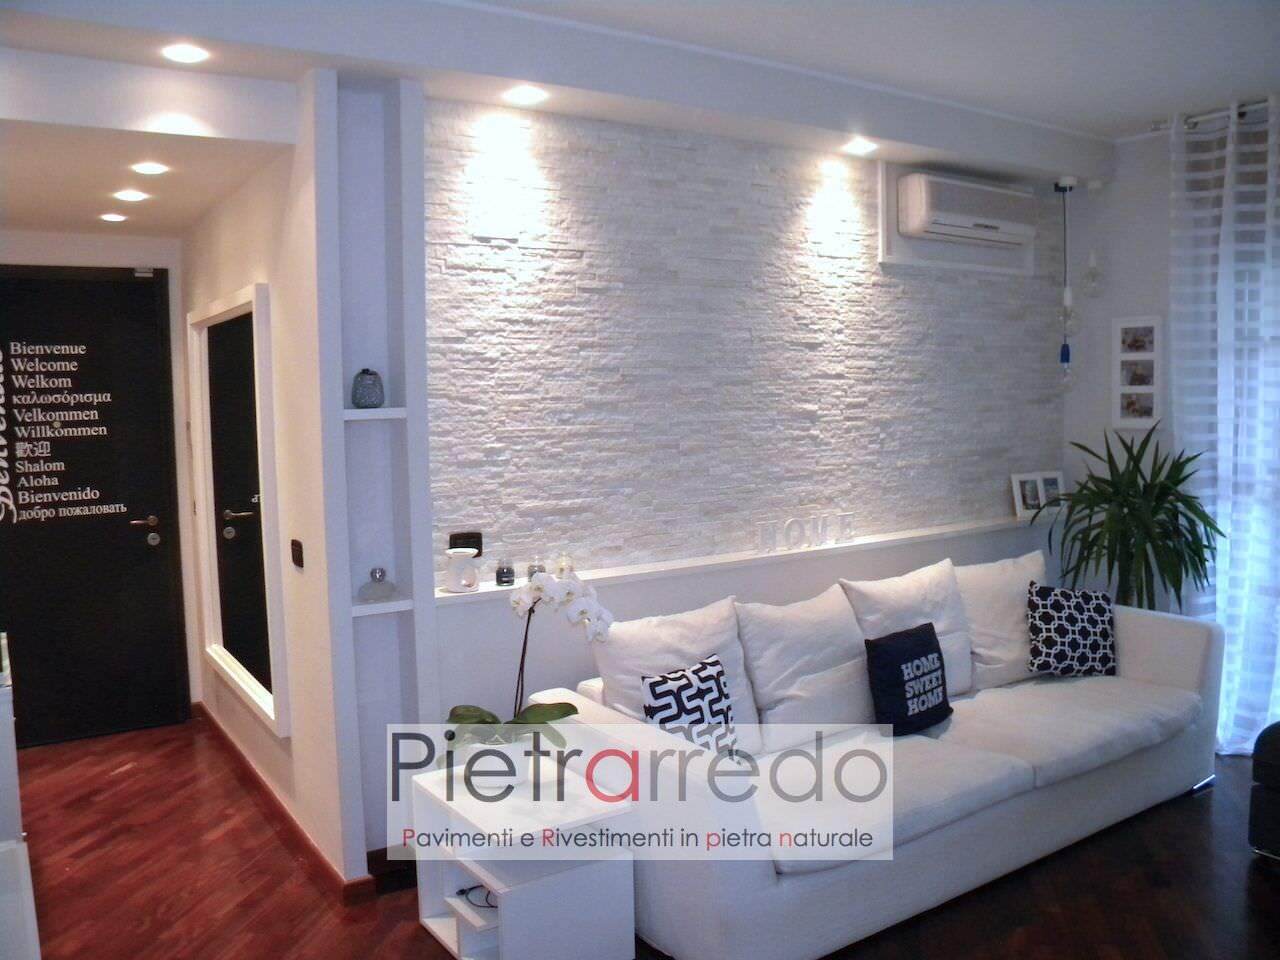 muro-sala-rivestimenti-pietra-quarzite-bianca-prezzo-costo-metro-quadro-pietrarredo-white-quartzite-price-panel-shine